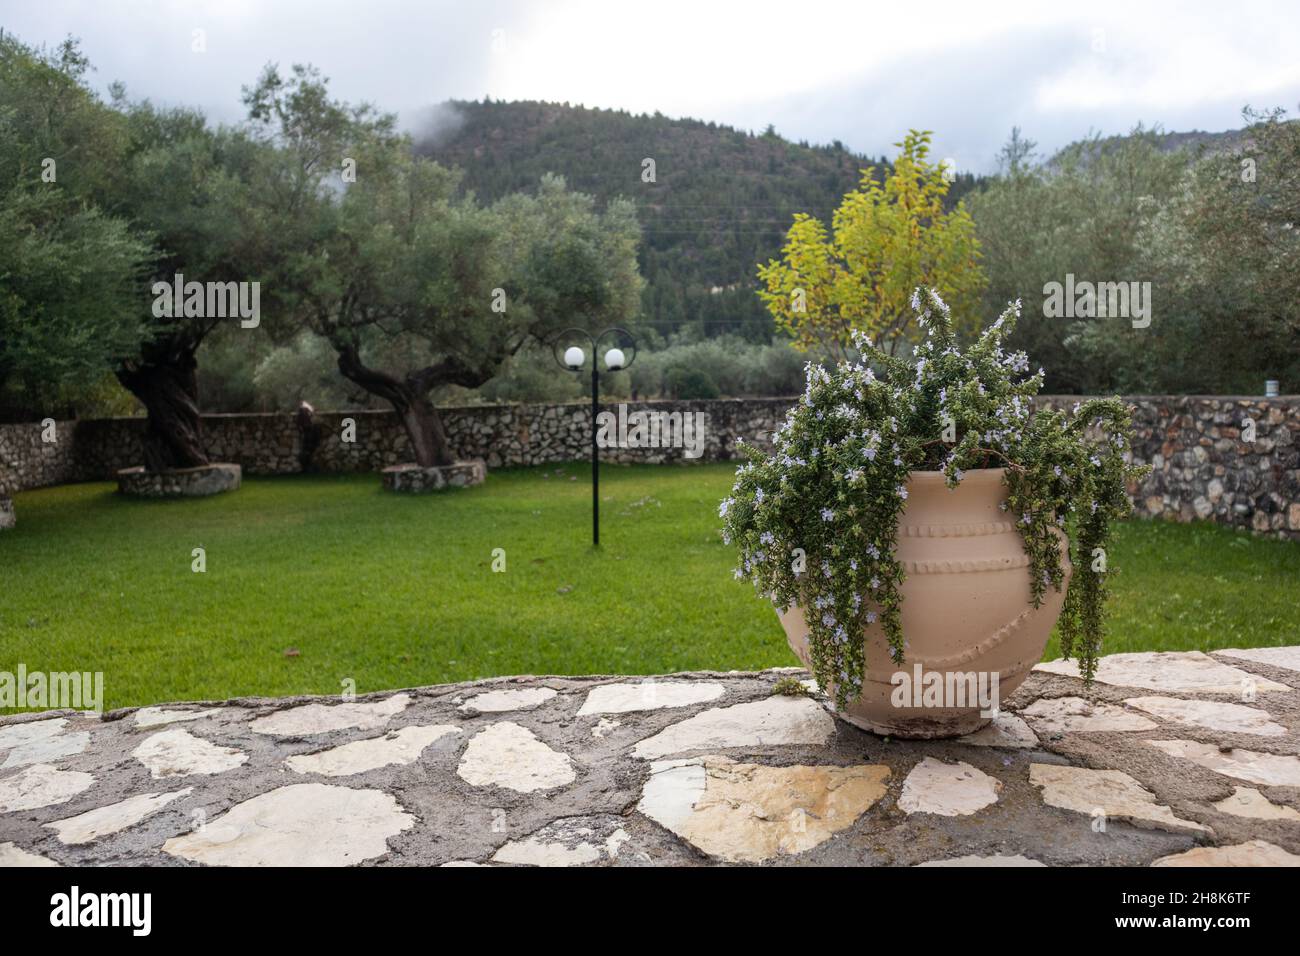 Jarrón grande con romero en verde veraniego tradicional jardín griego con olivos y paredes de piedra. Viajes de verano lugares detalles de la arquitectura Foto de stock